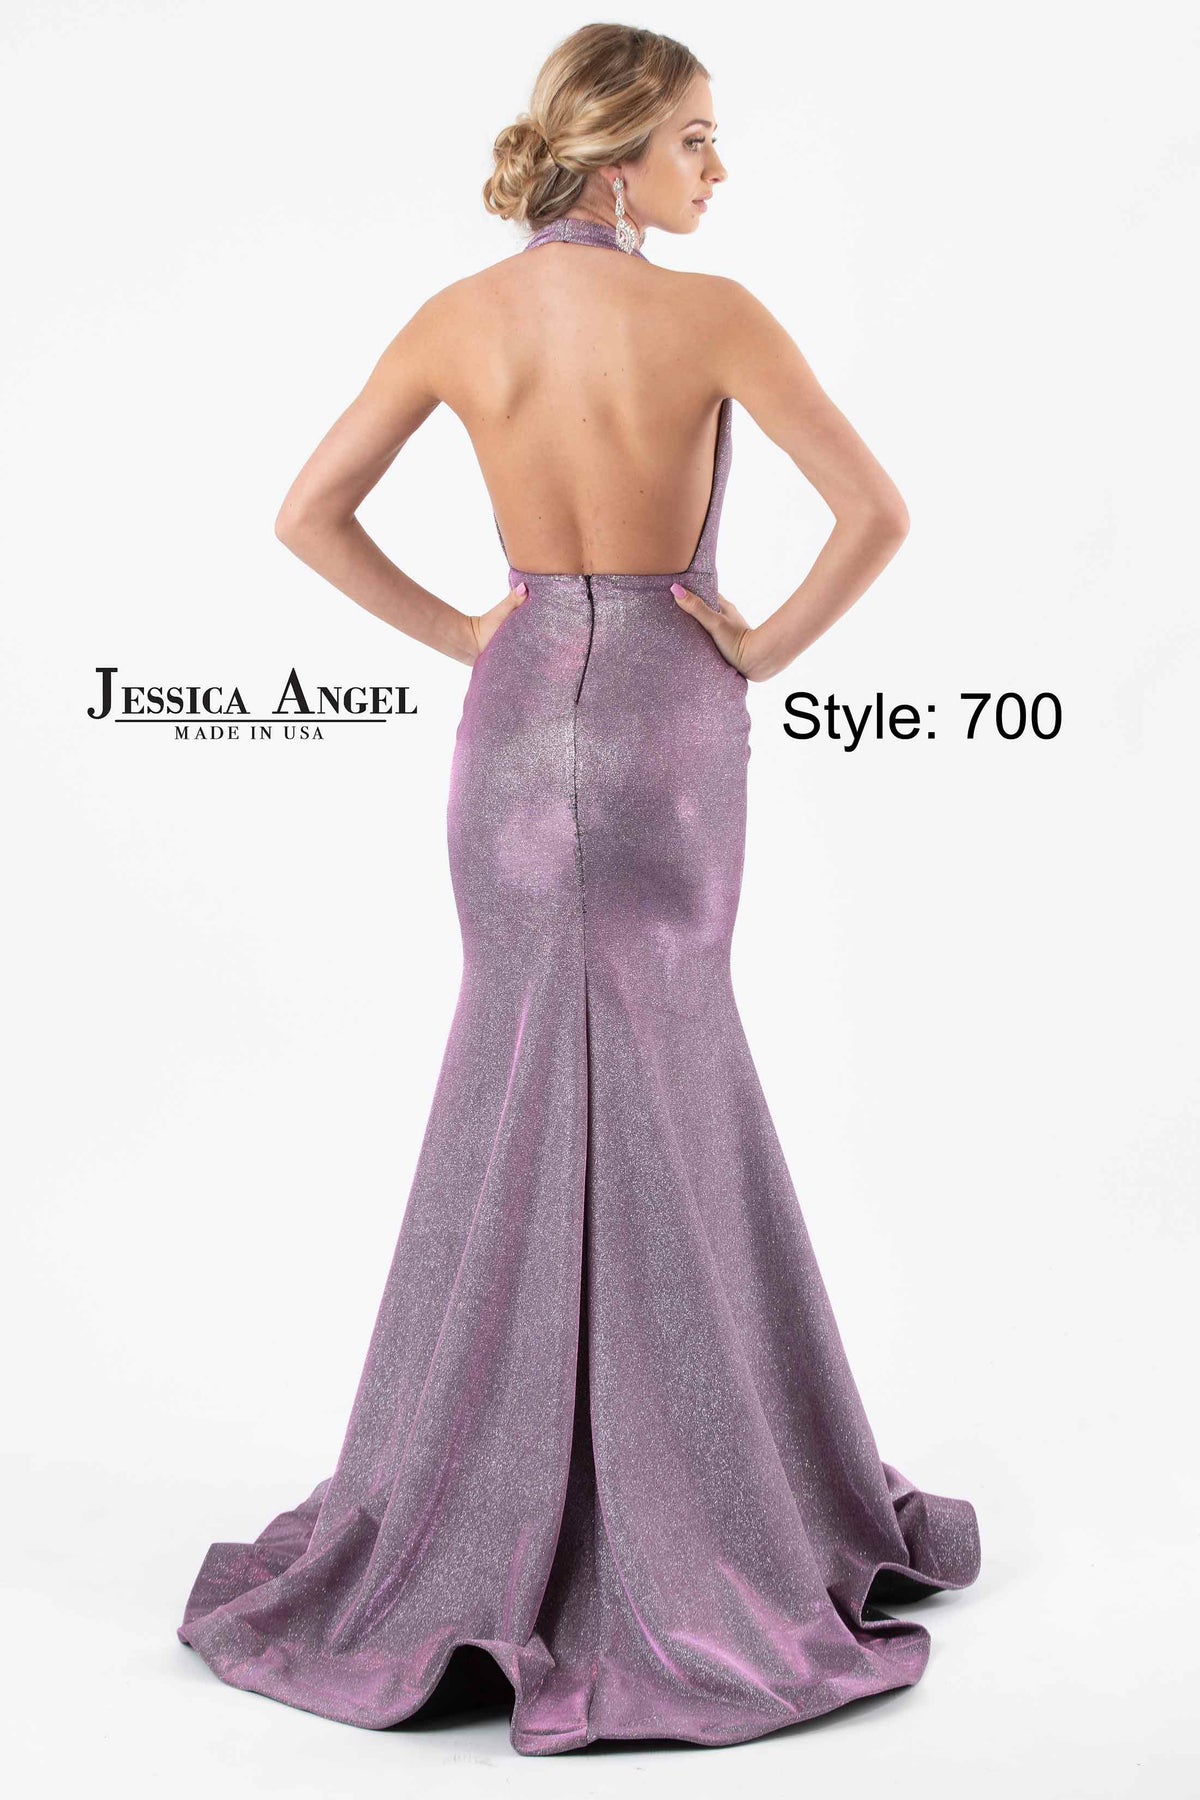 Jessica Angel 700